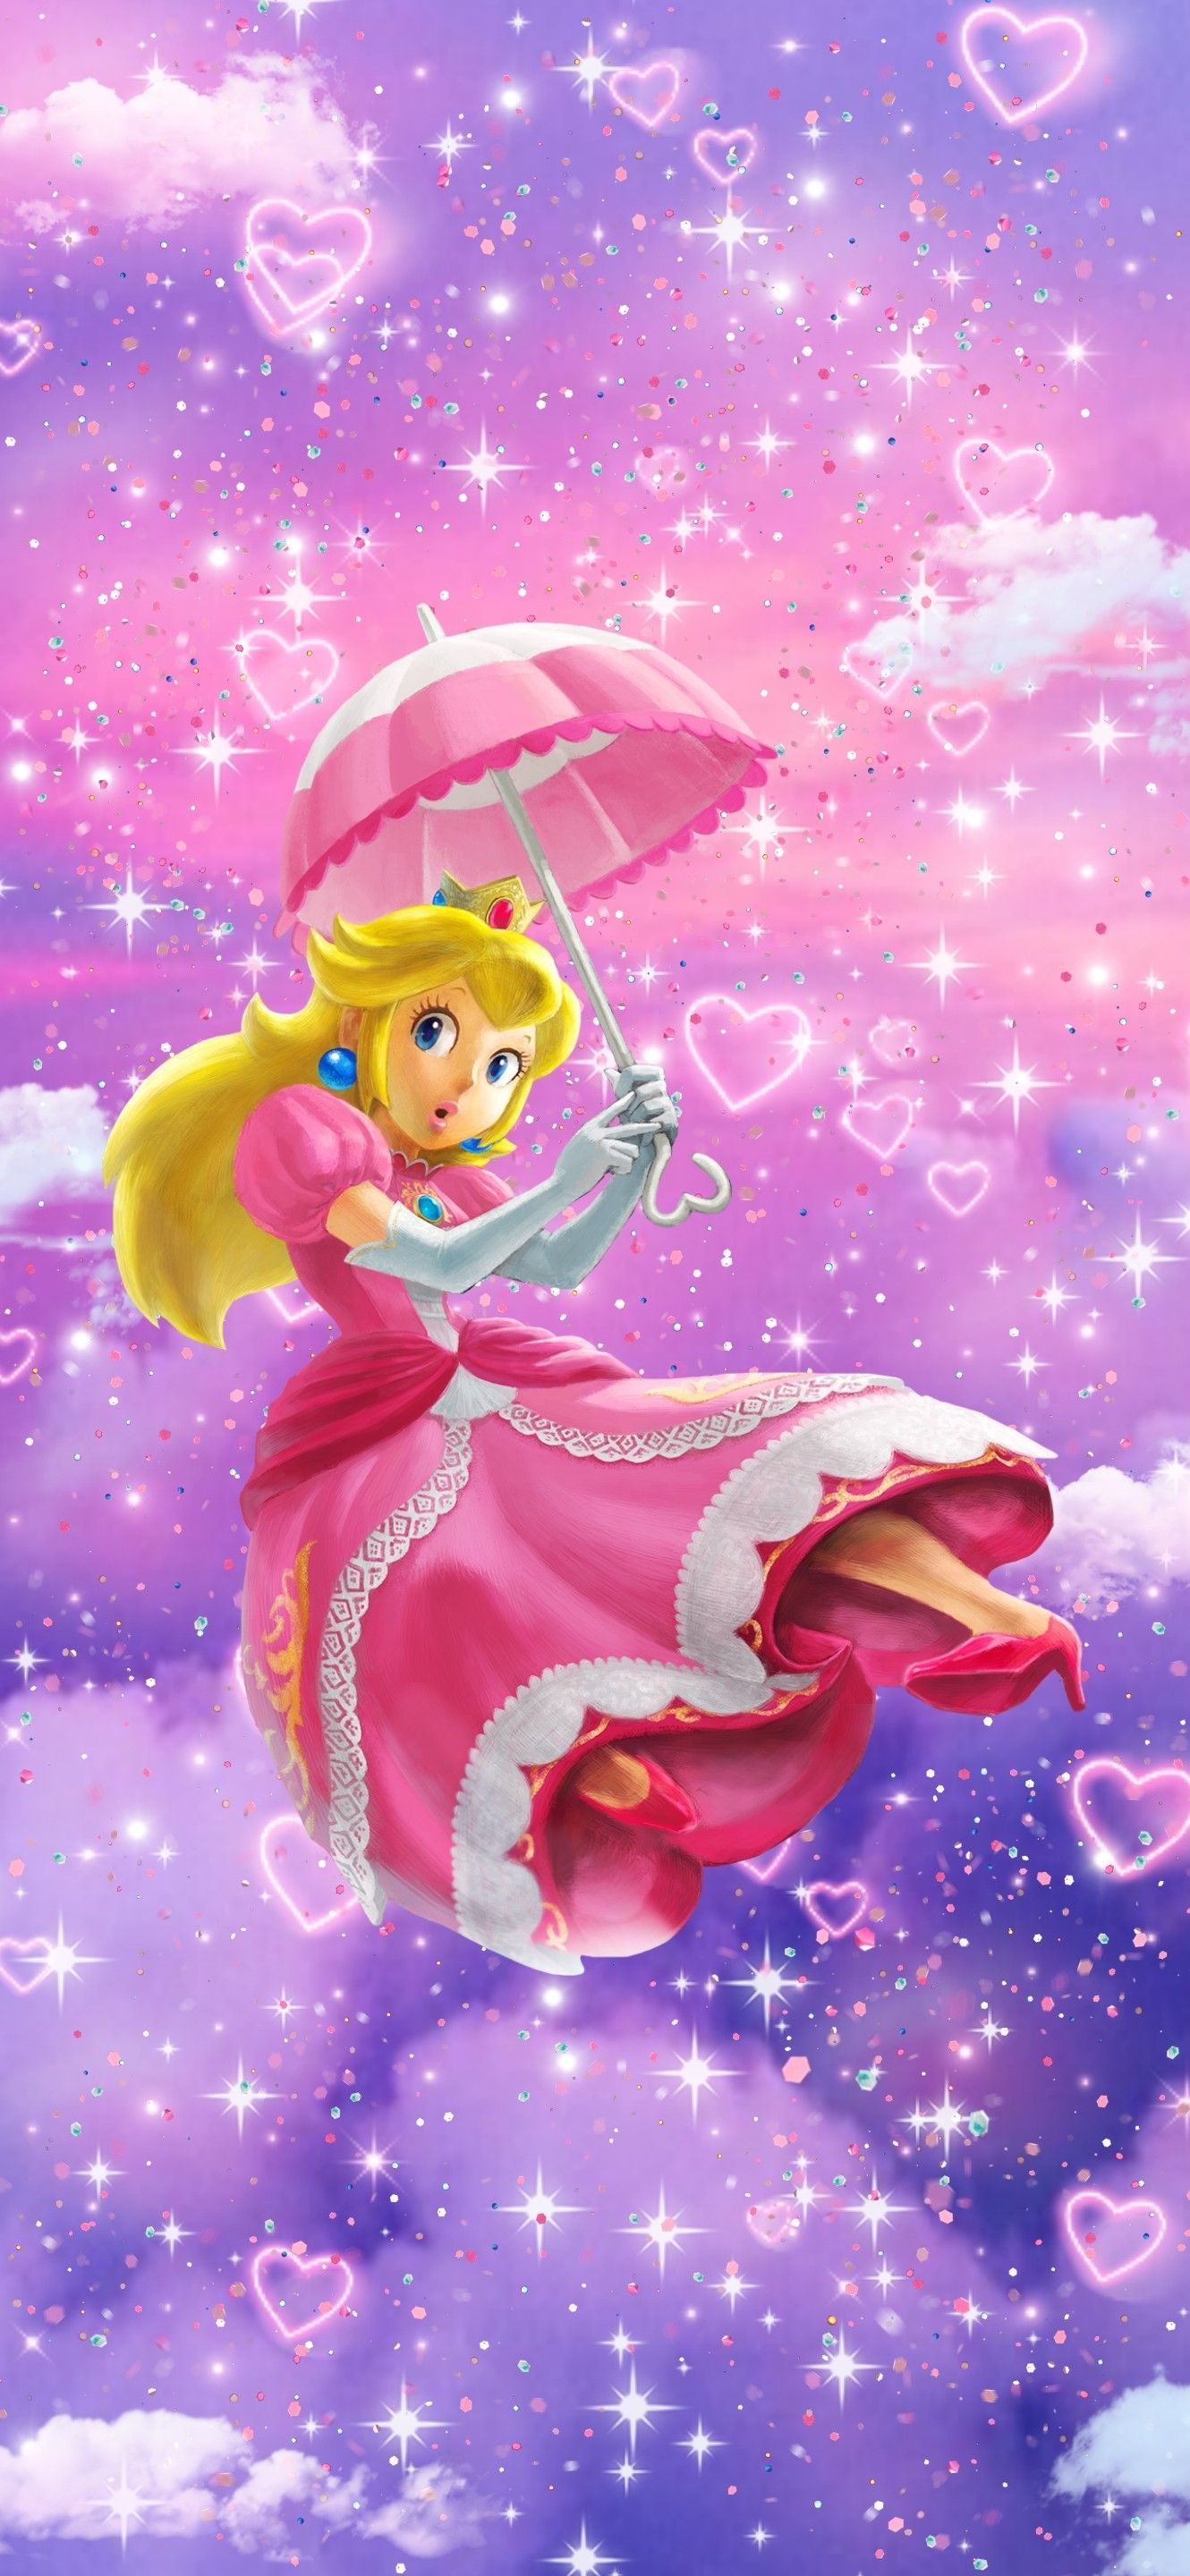 Nintendo Princess Peach aesthetic pink phone wallpaper. Peach wallpaper, Super princess peach, Nintendo princess